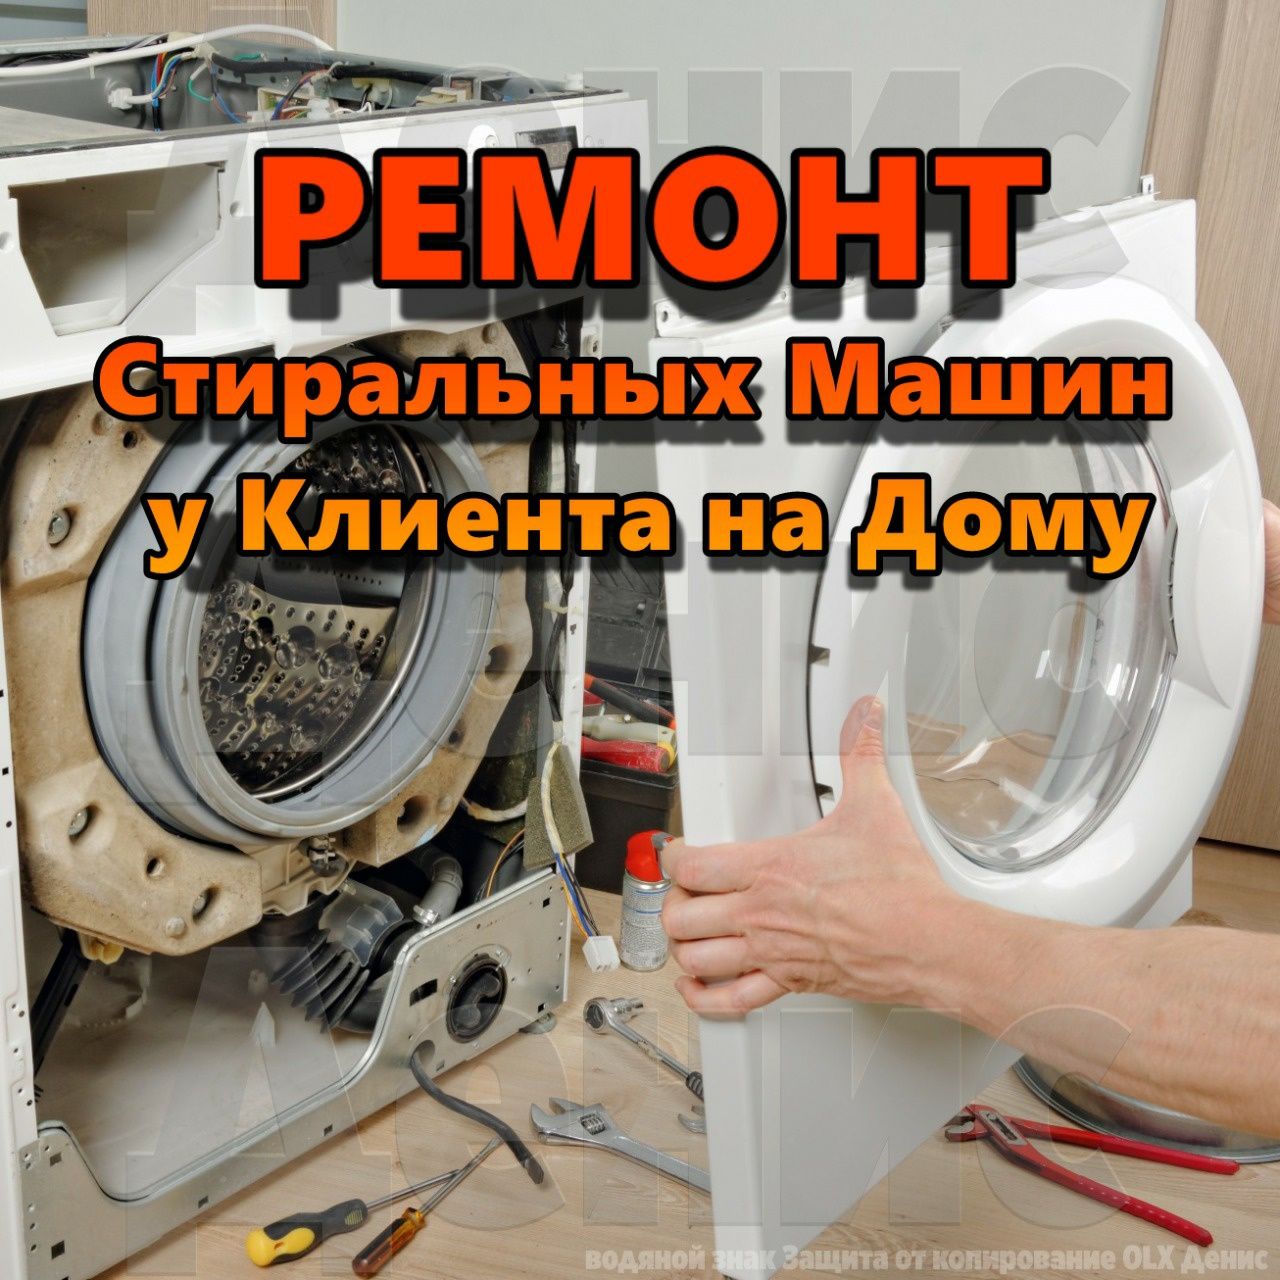 Ремонт стиральных машин быстро и недорого